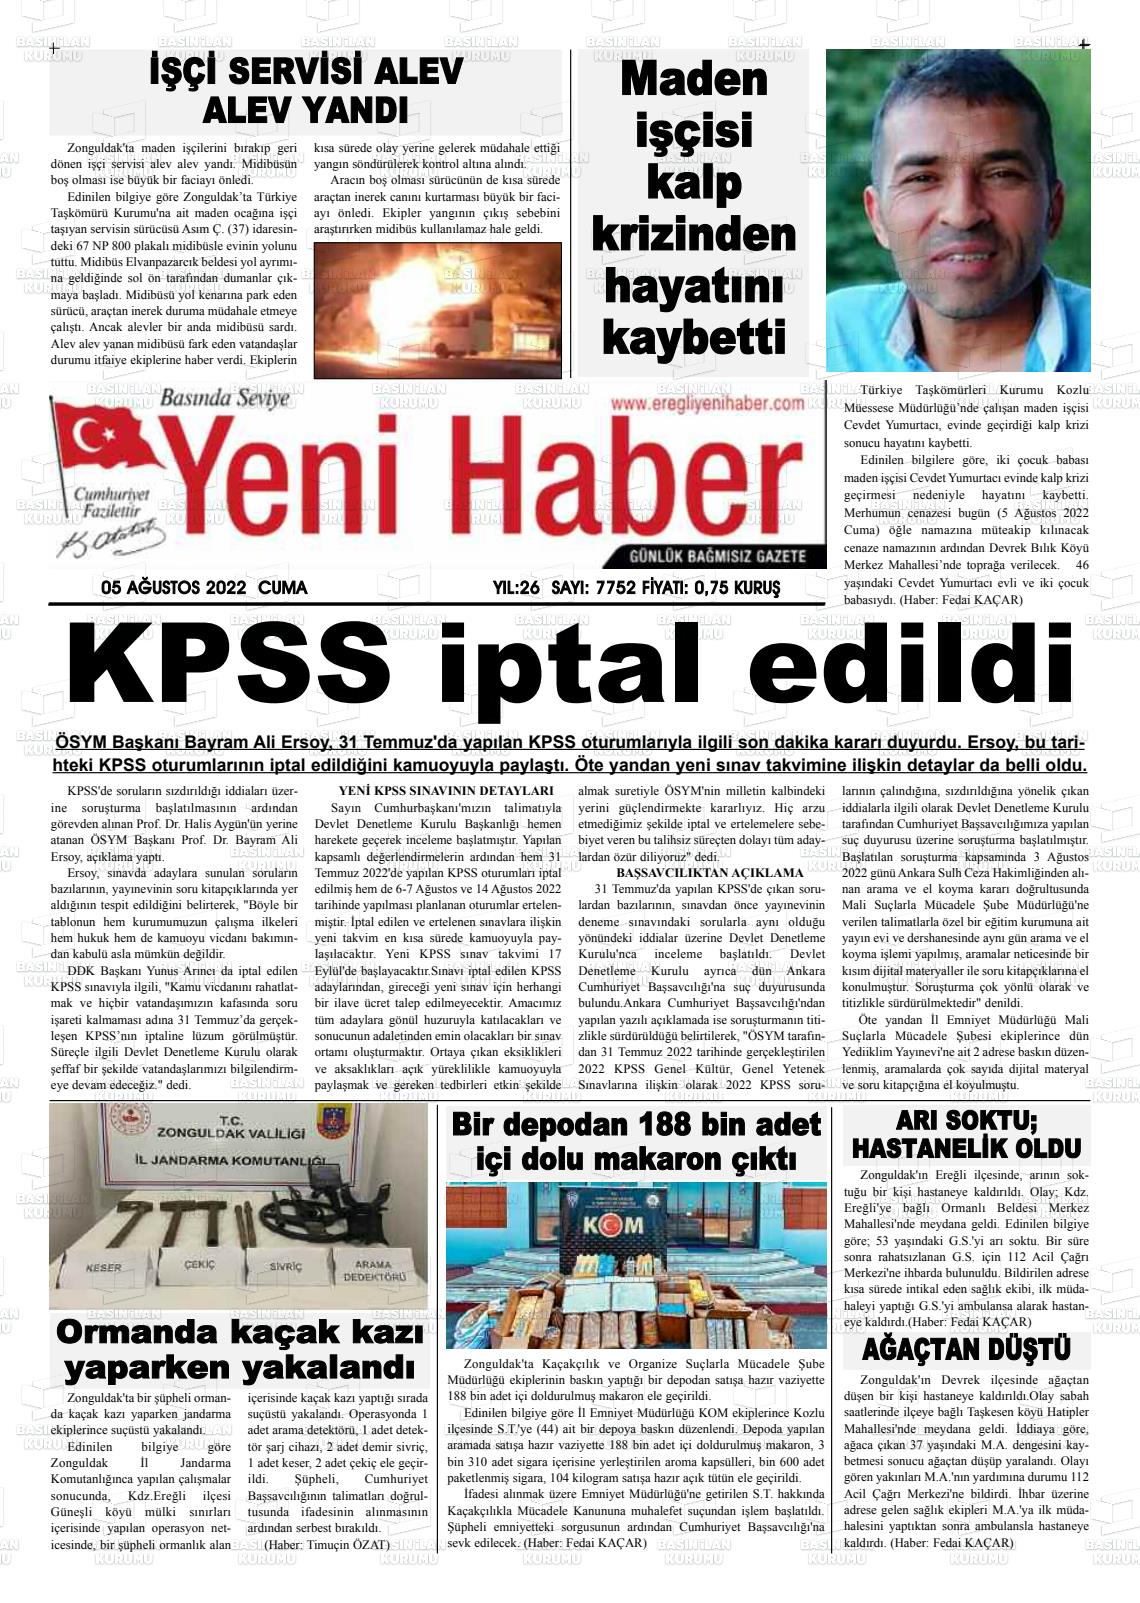 05 Ağustos 2022 Ereğli Yeni Haber Gazete Manşeti